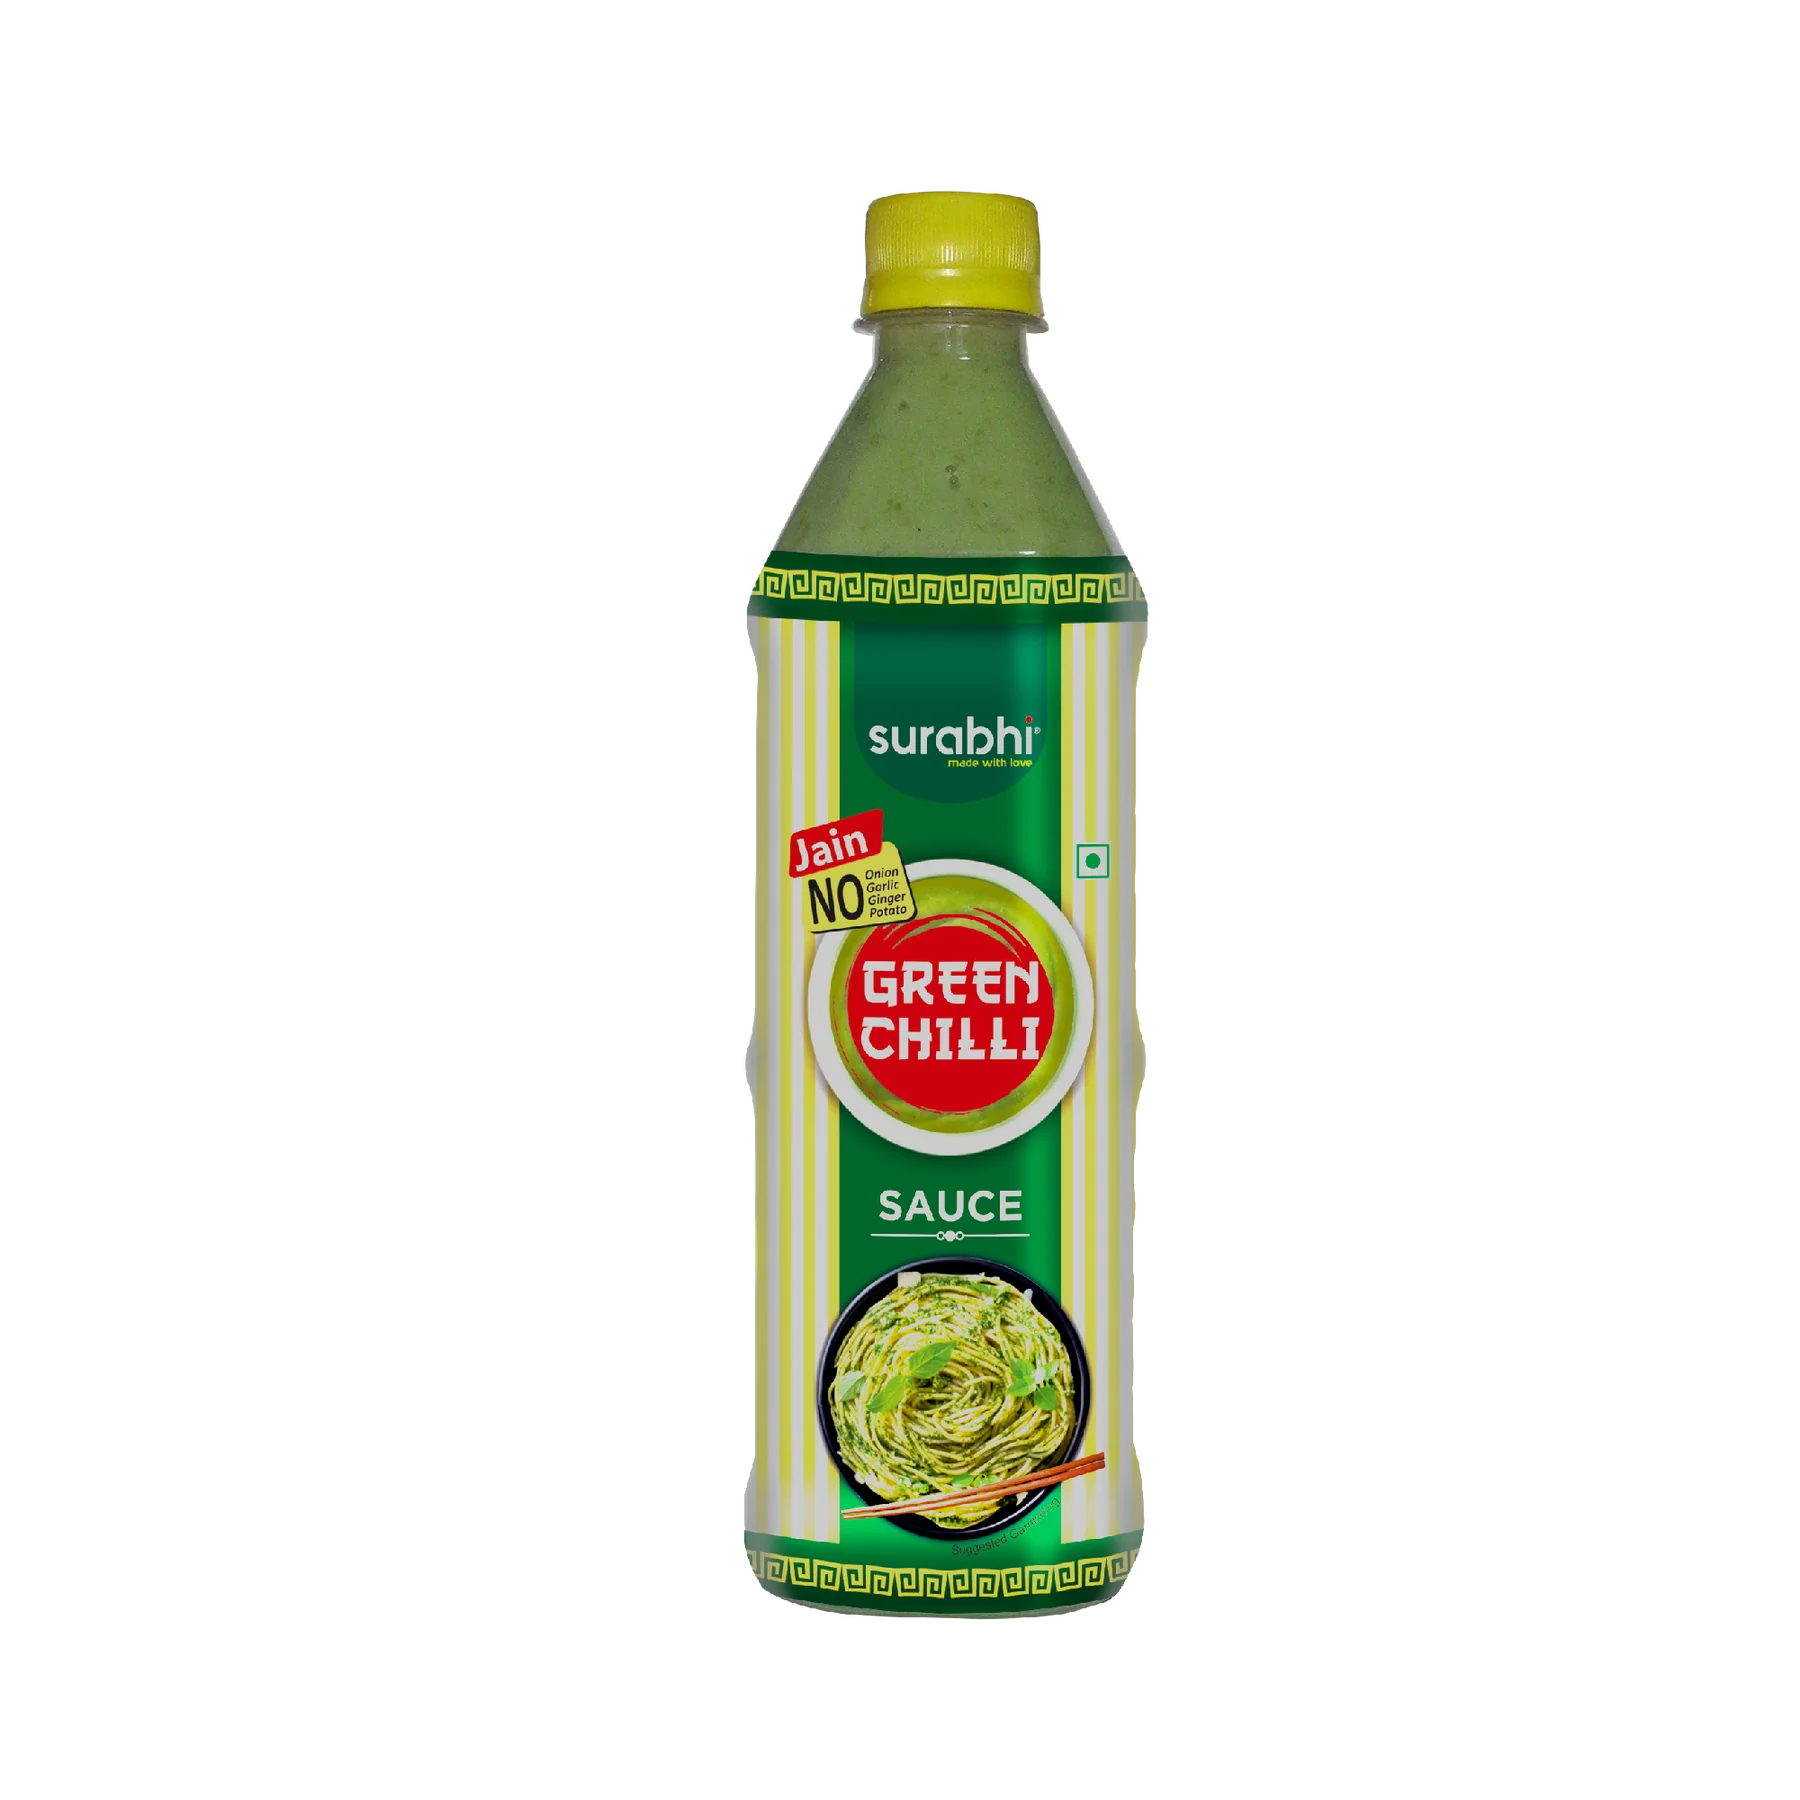 Surabhi Jain Green Chilli Sauce - 690 g